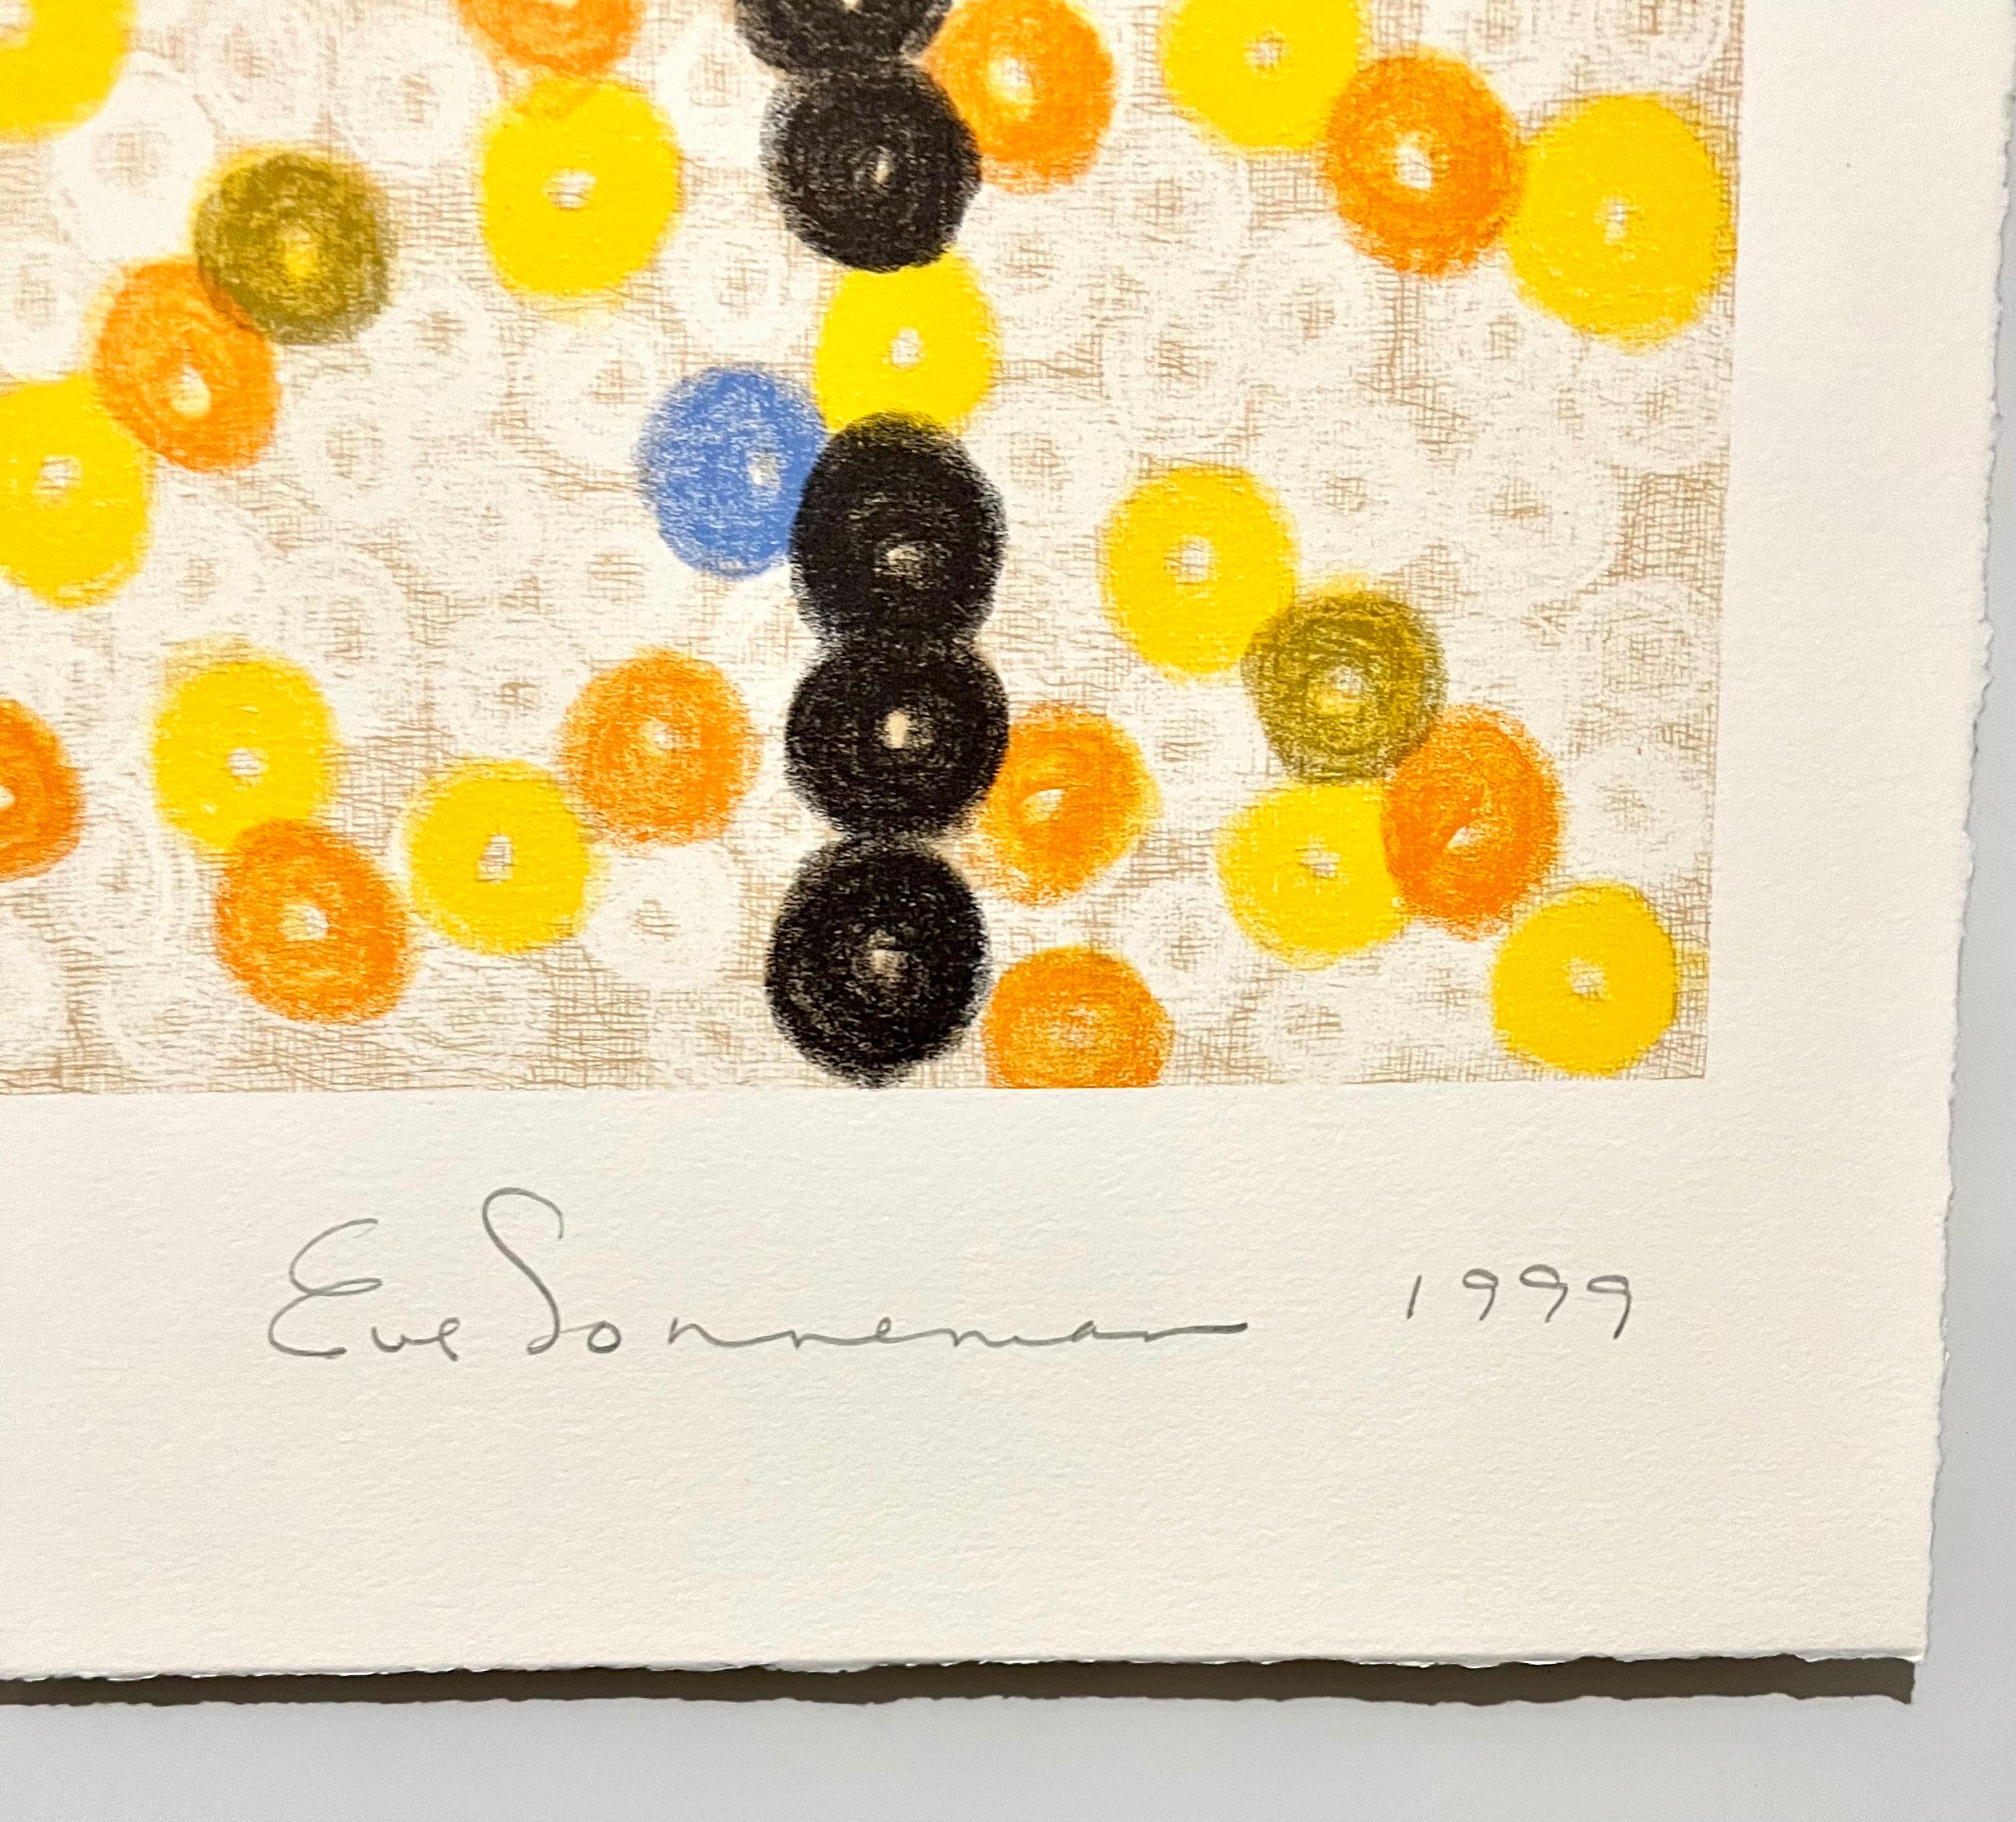 Composition de couleurs géométriques abstraites
Artiste : Eve Sonneman
Lithographie, 1999
Taille de l'image 25 x 22